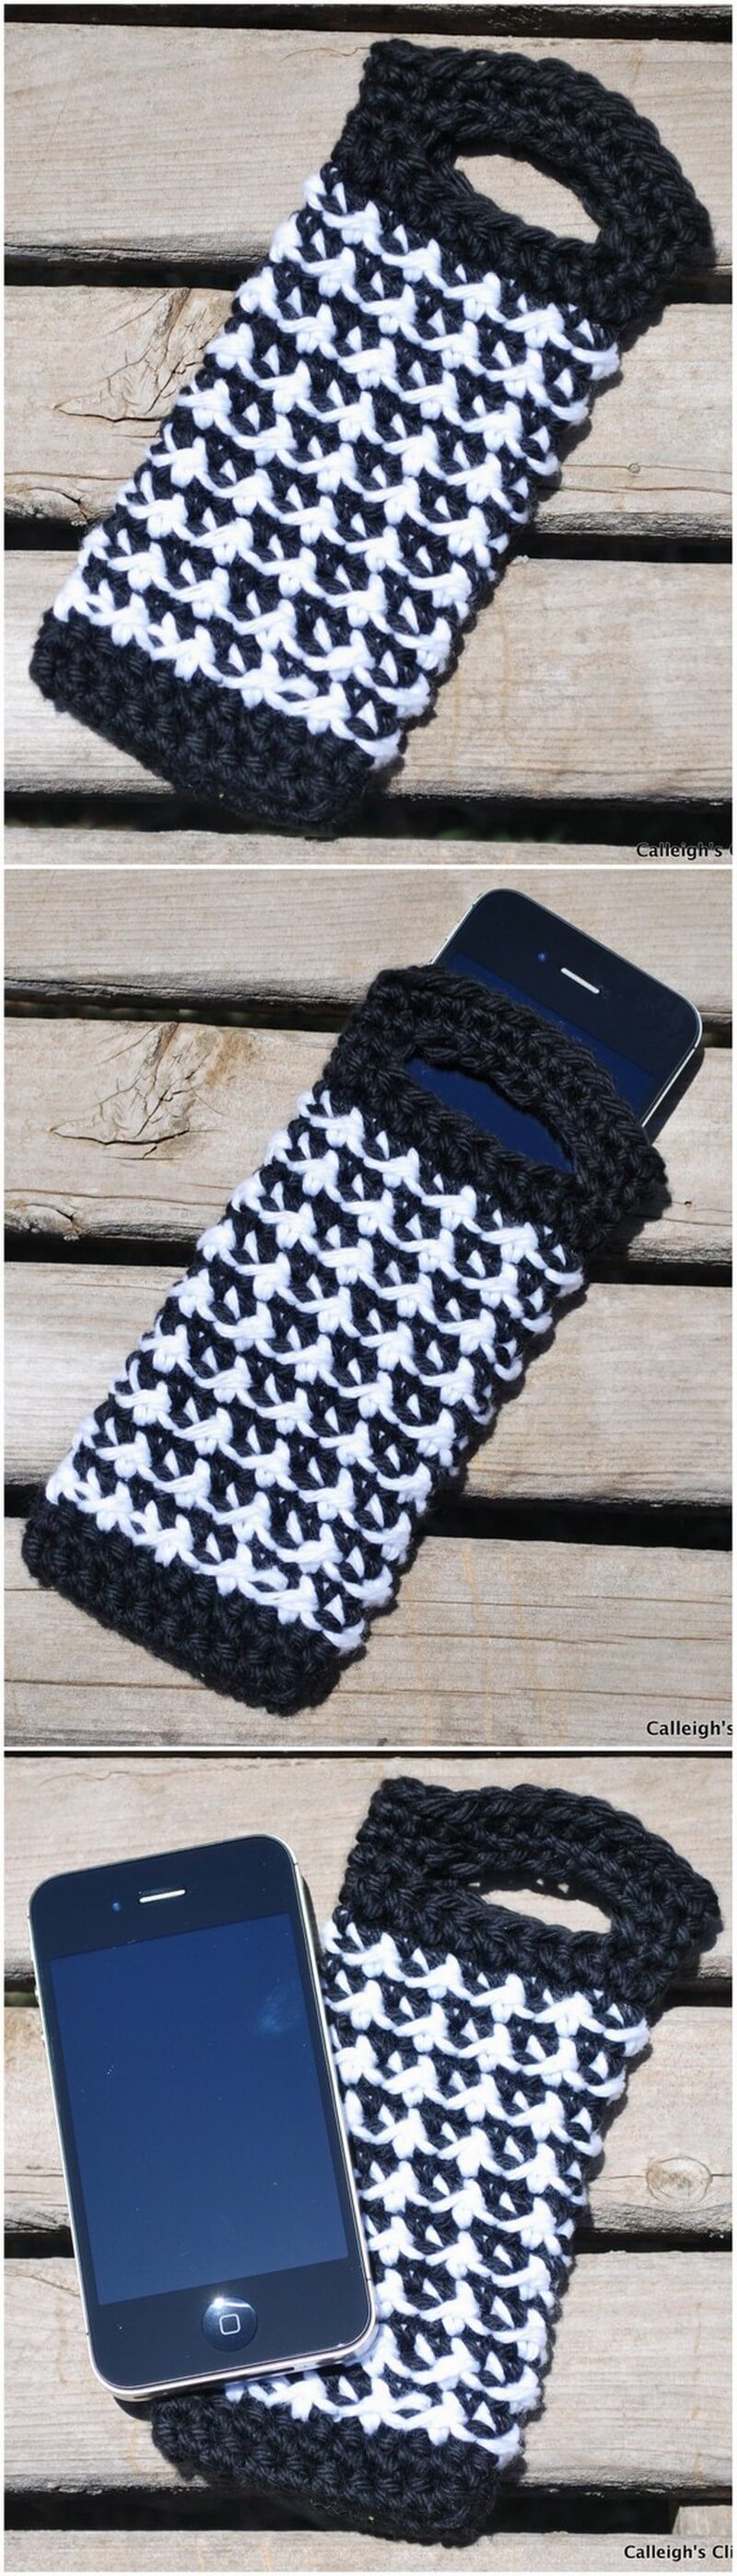 Crochet Mobile Cover Pattern (2)